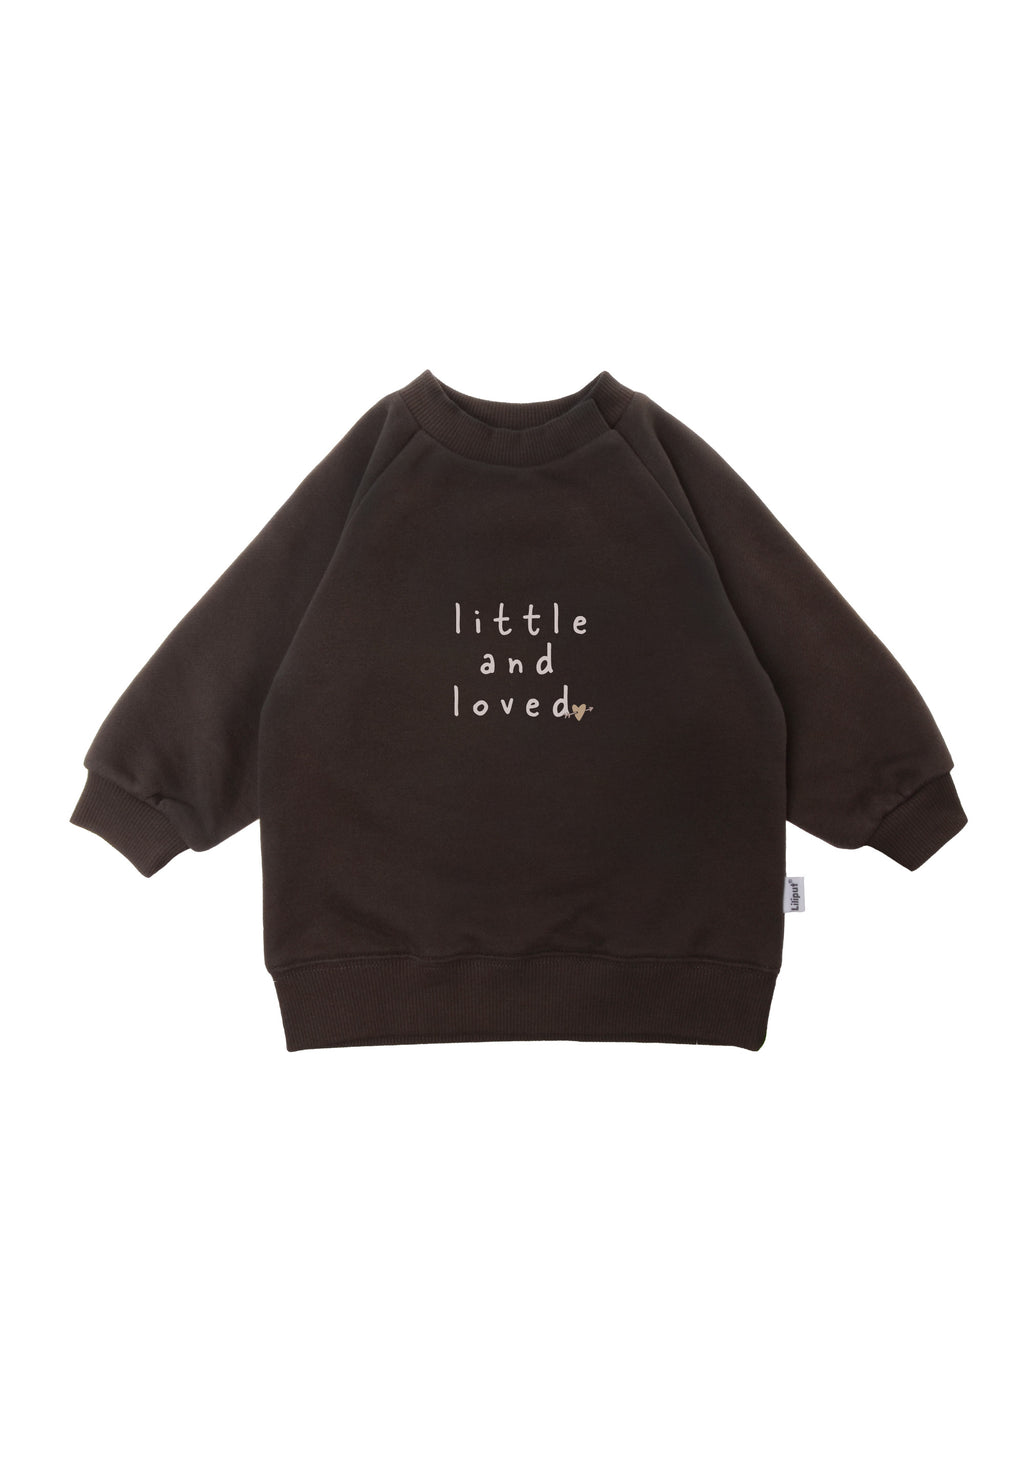 Sweatshirt in braun mit Print "little and loved".